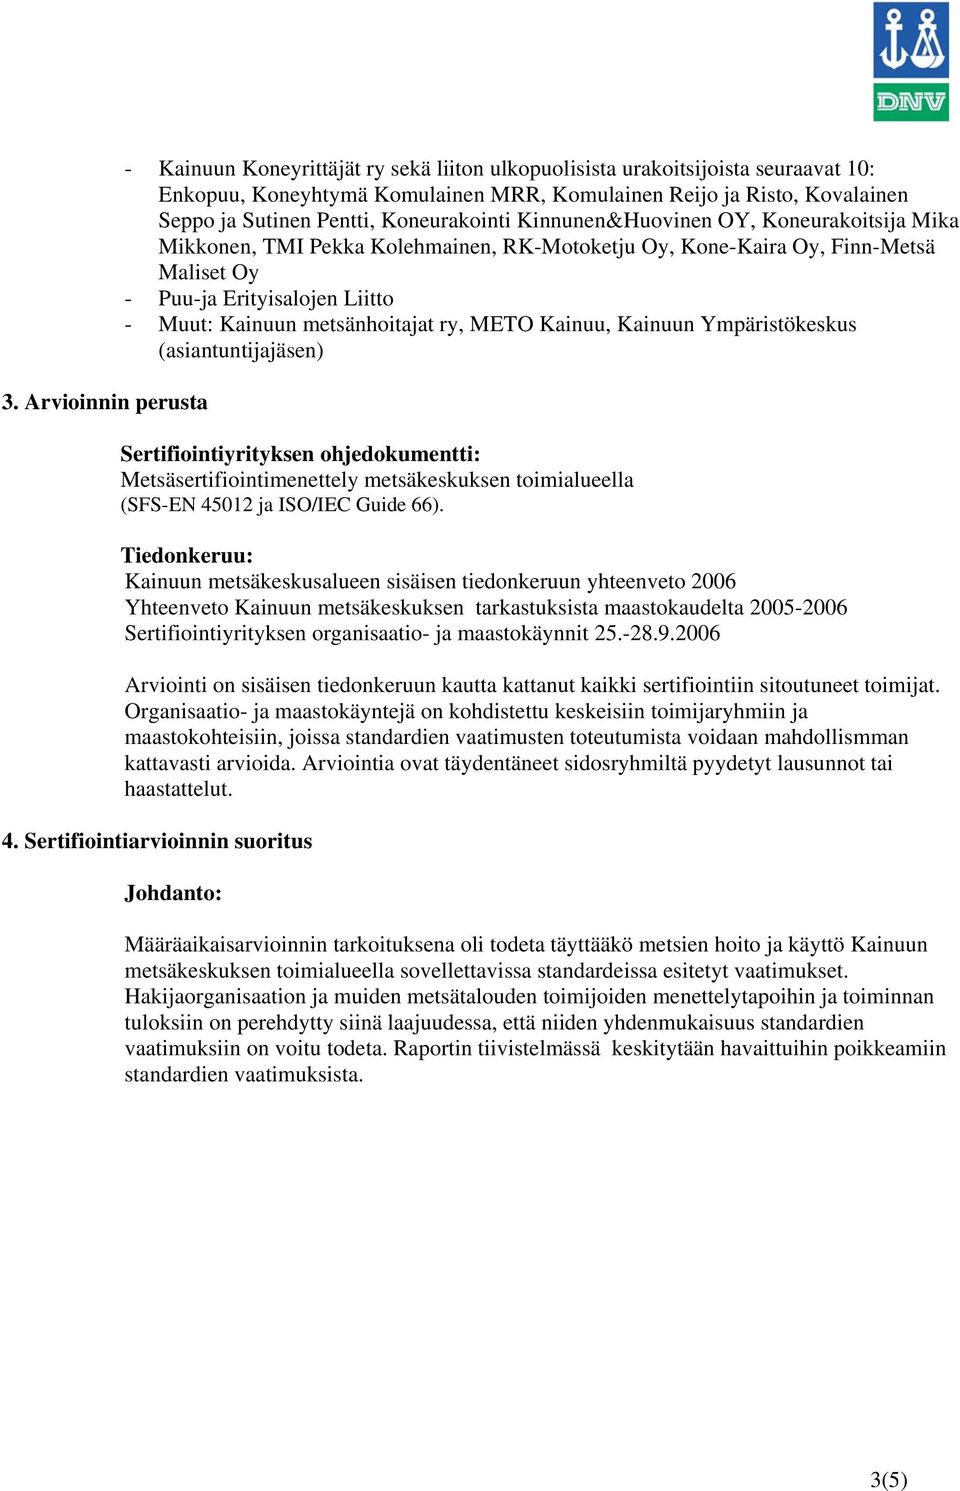 metsänhoitajat ry, METO Kainuu, Kainuun Ympäristökeskus (asiantuntijajäsen) Sertifiointiyrityksen ohjedokumentti: Metsäsertifiointimenettely metsäkeskuksen toimialueella (SFS-EN 45012 ja ISO/IEC